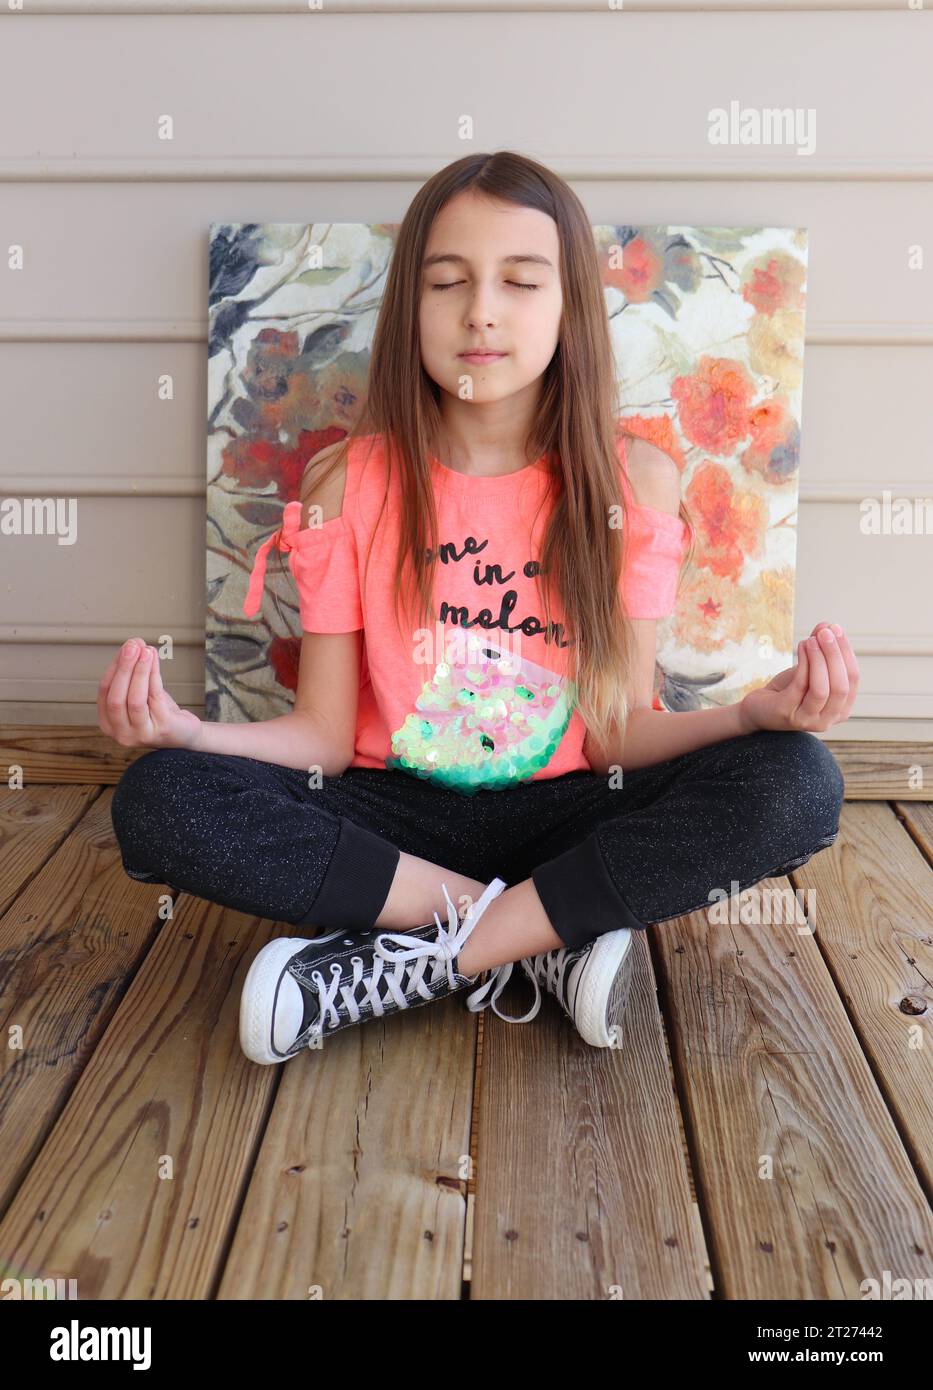 La joven aprende a meditar Foto de stock